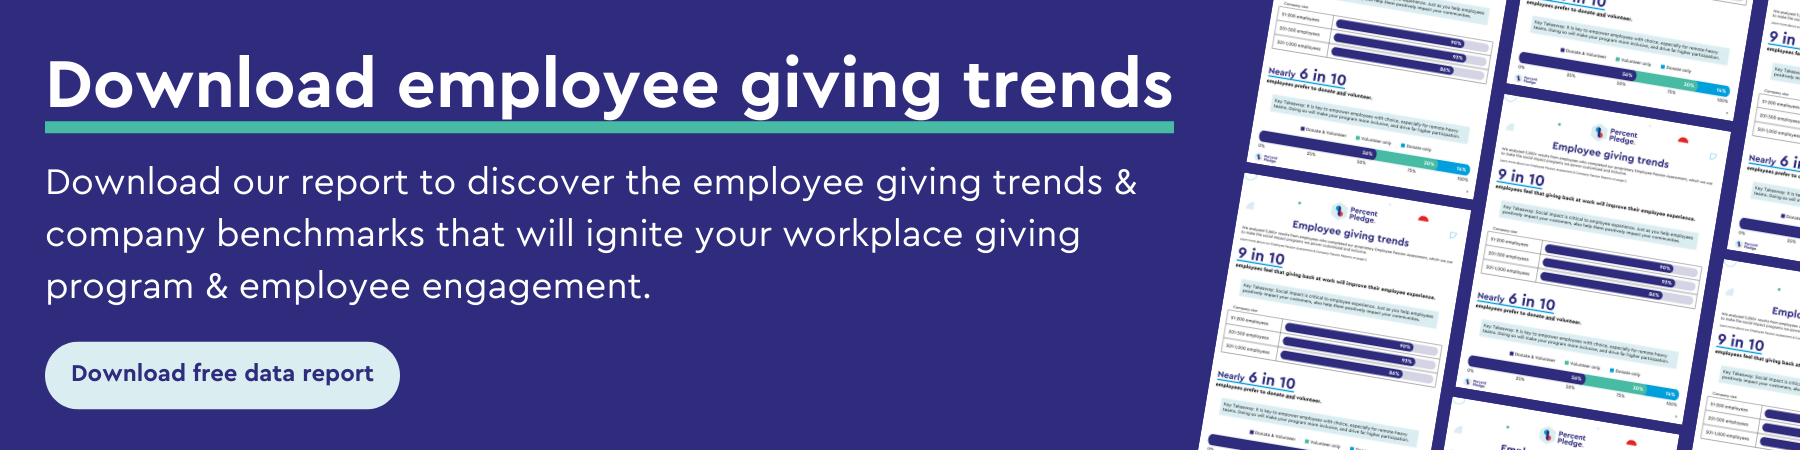 Employee giving trends report